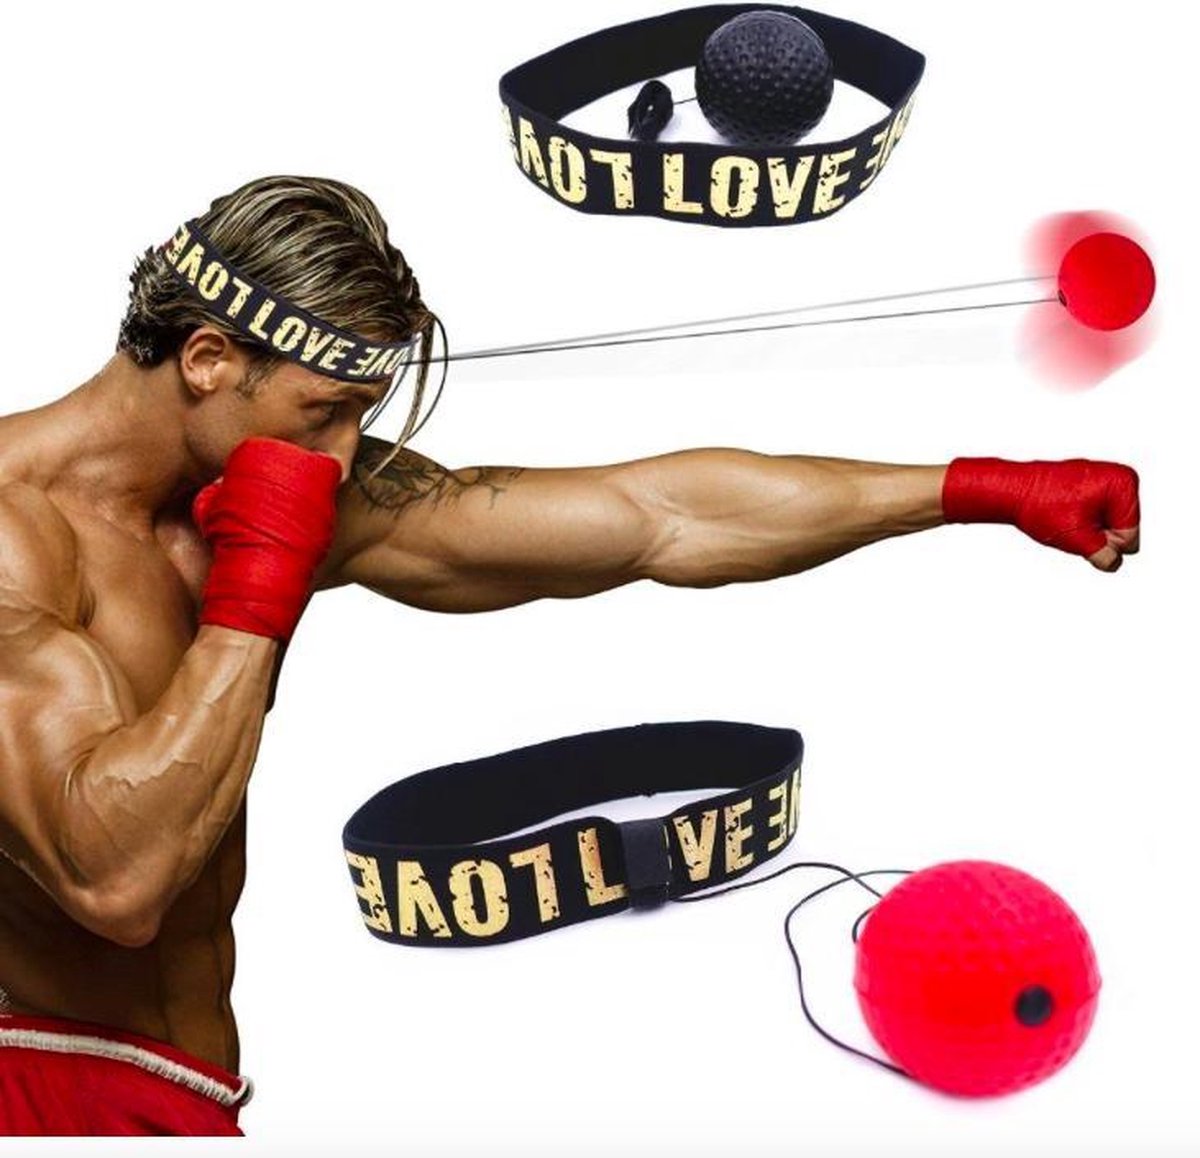 balle réflexe de boxe - balle réflexe - vitesse - boxe - entraînement -  bandeau 